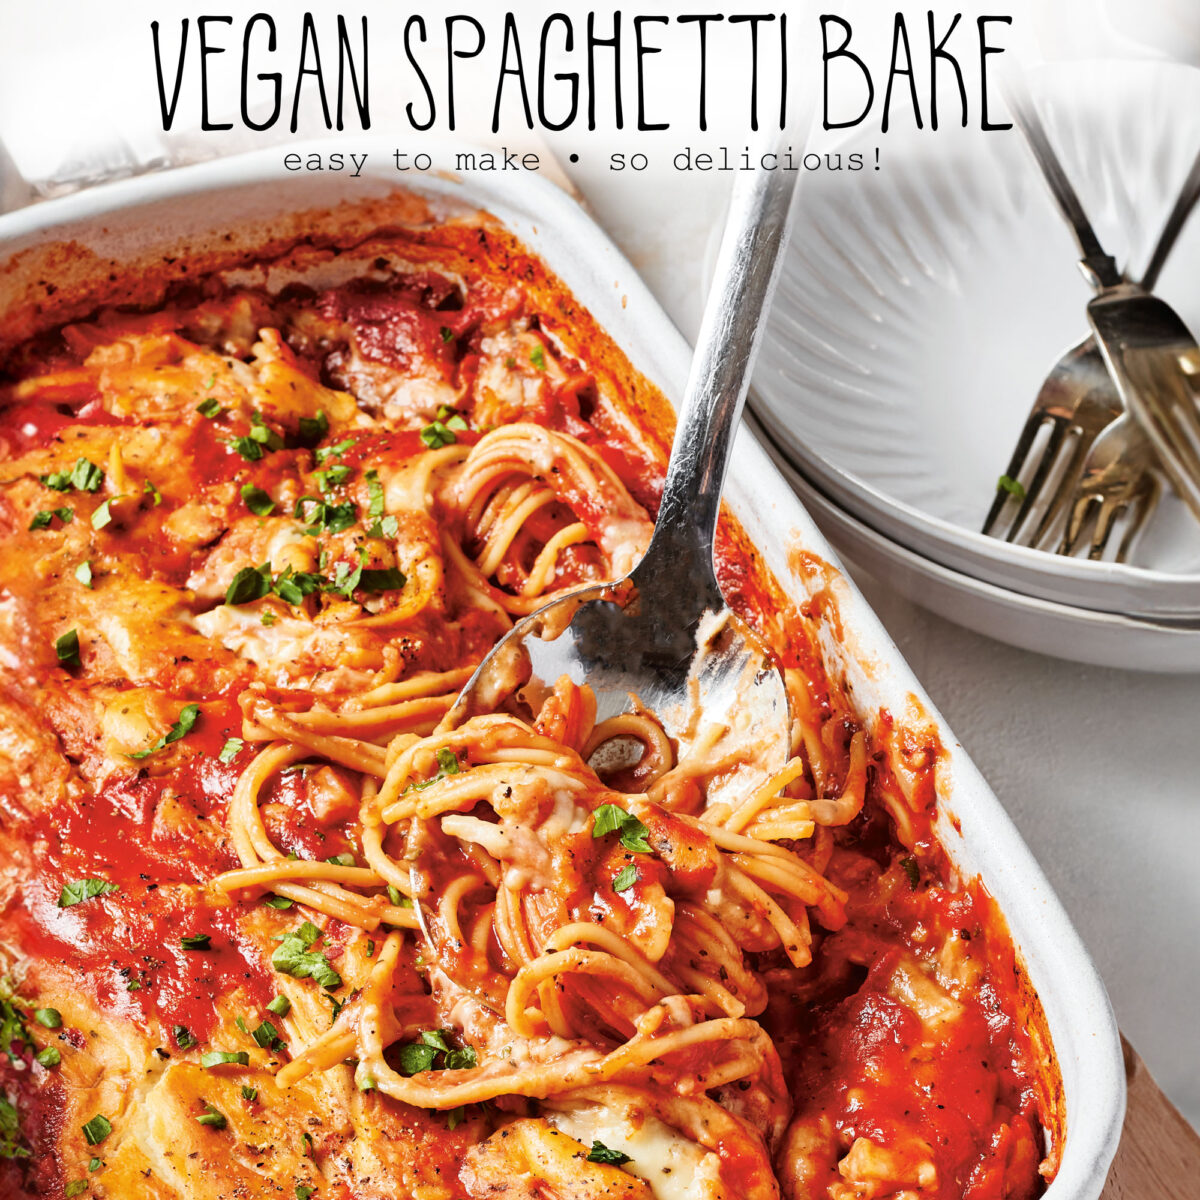 Vegan Spaghetti Bake